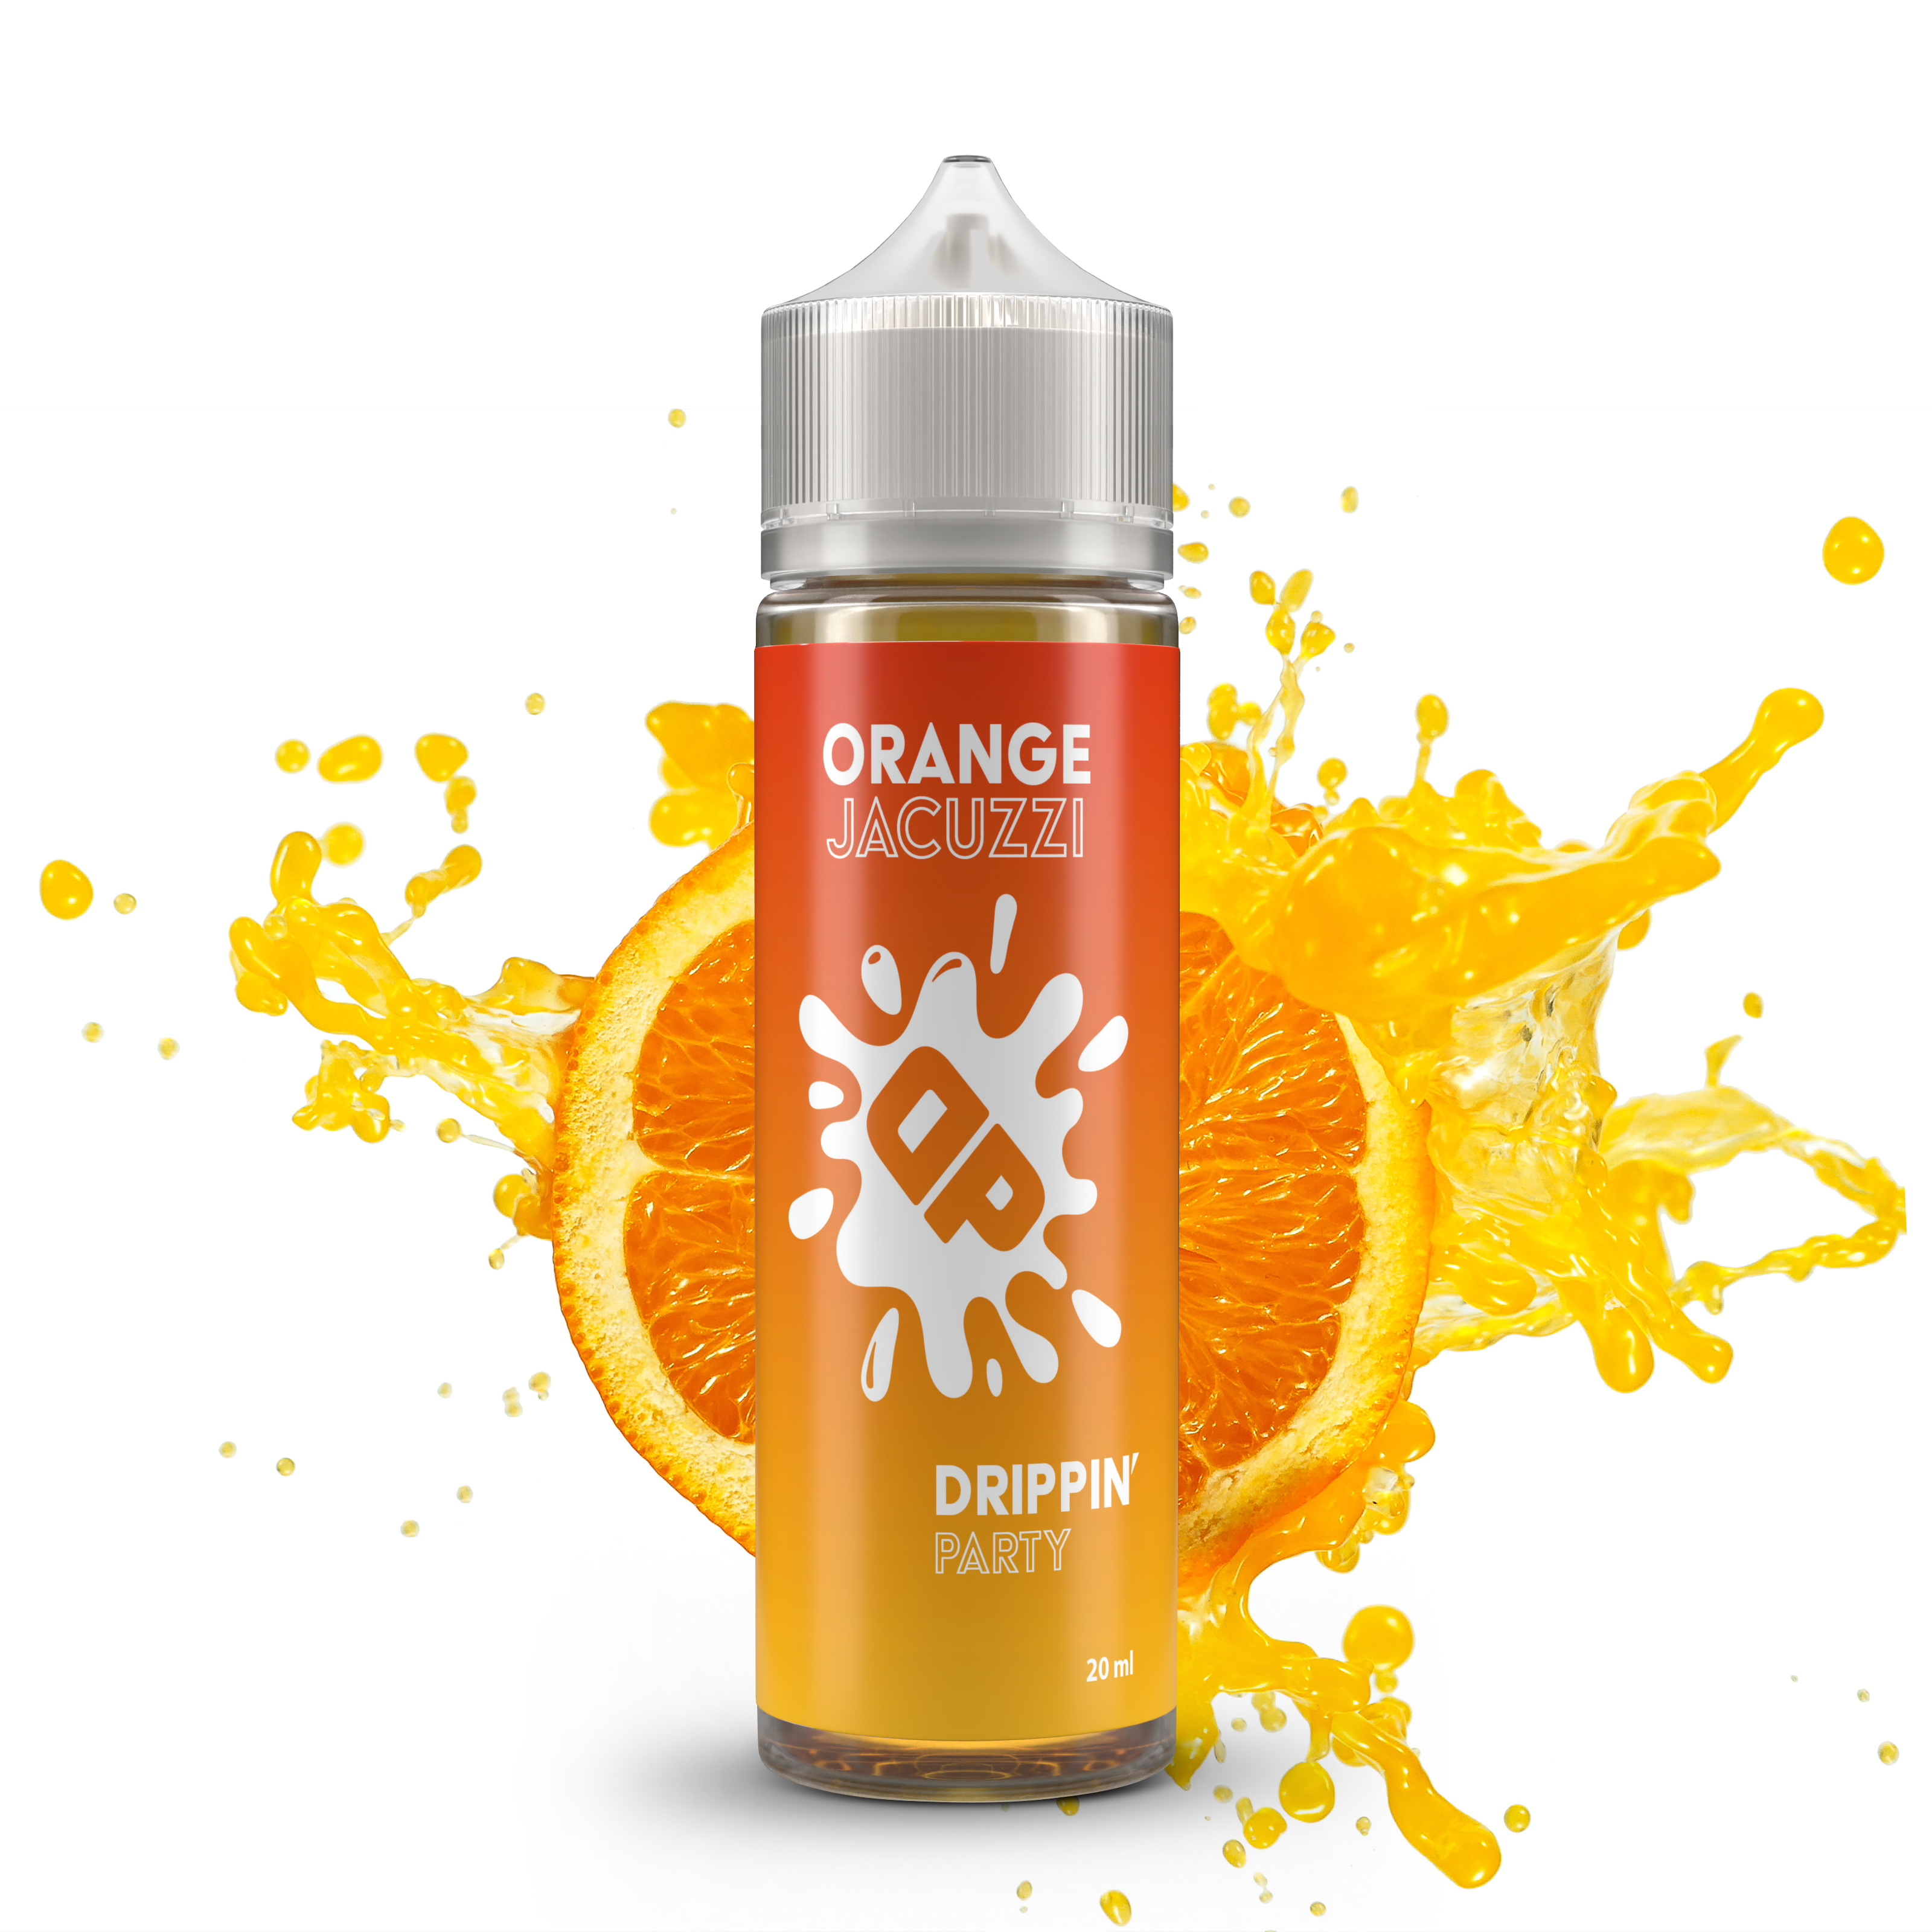 Drippin Party - Orange Jacuzzi (Pomerančové candy) Shake&Vape